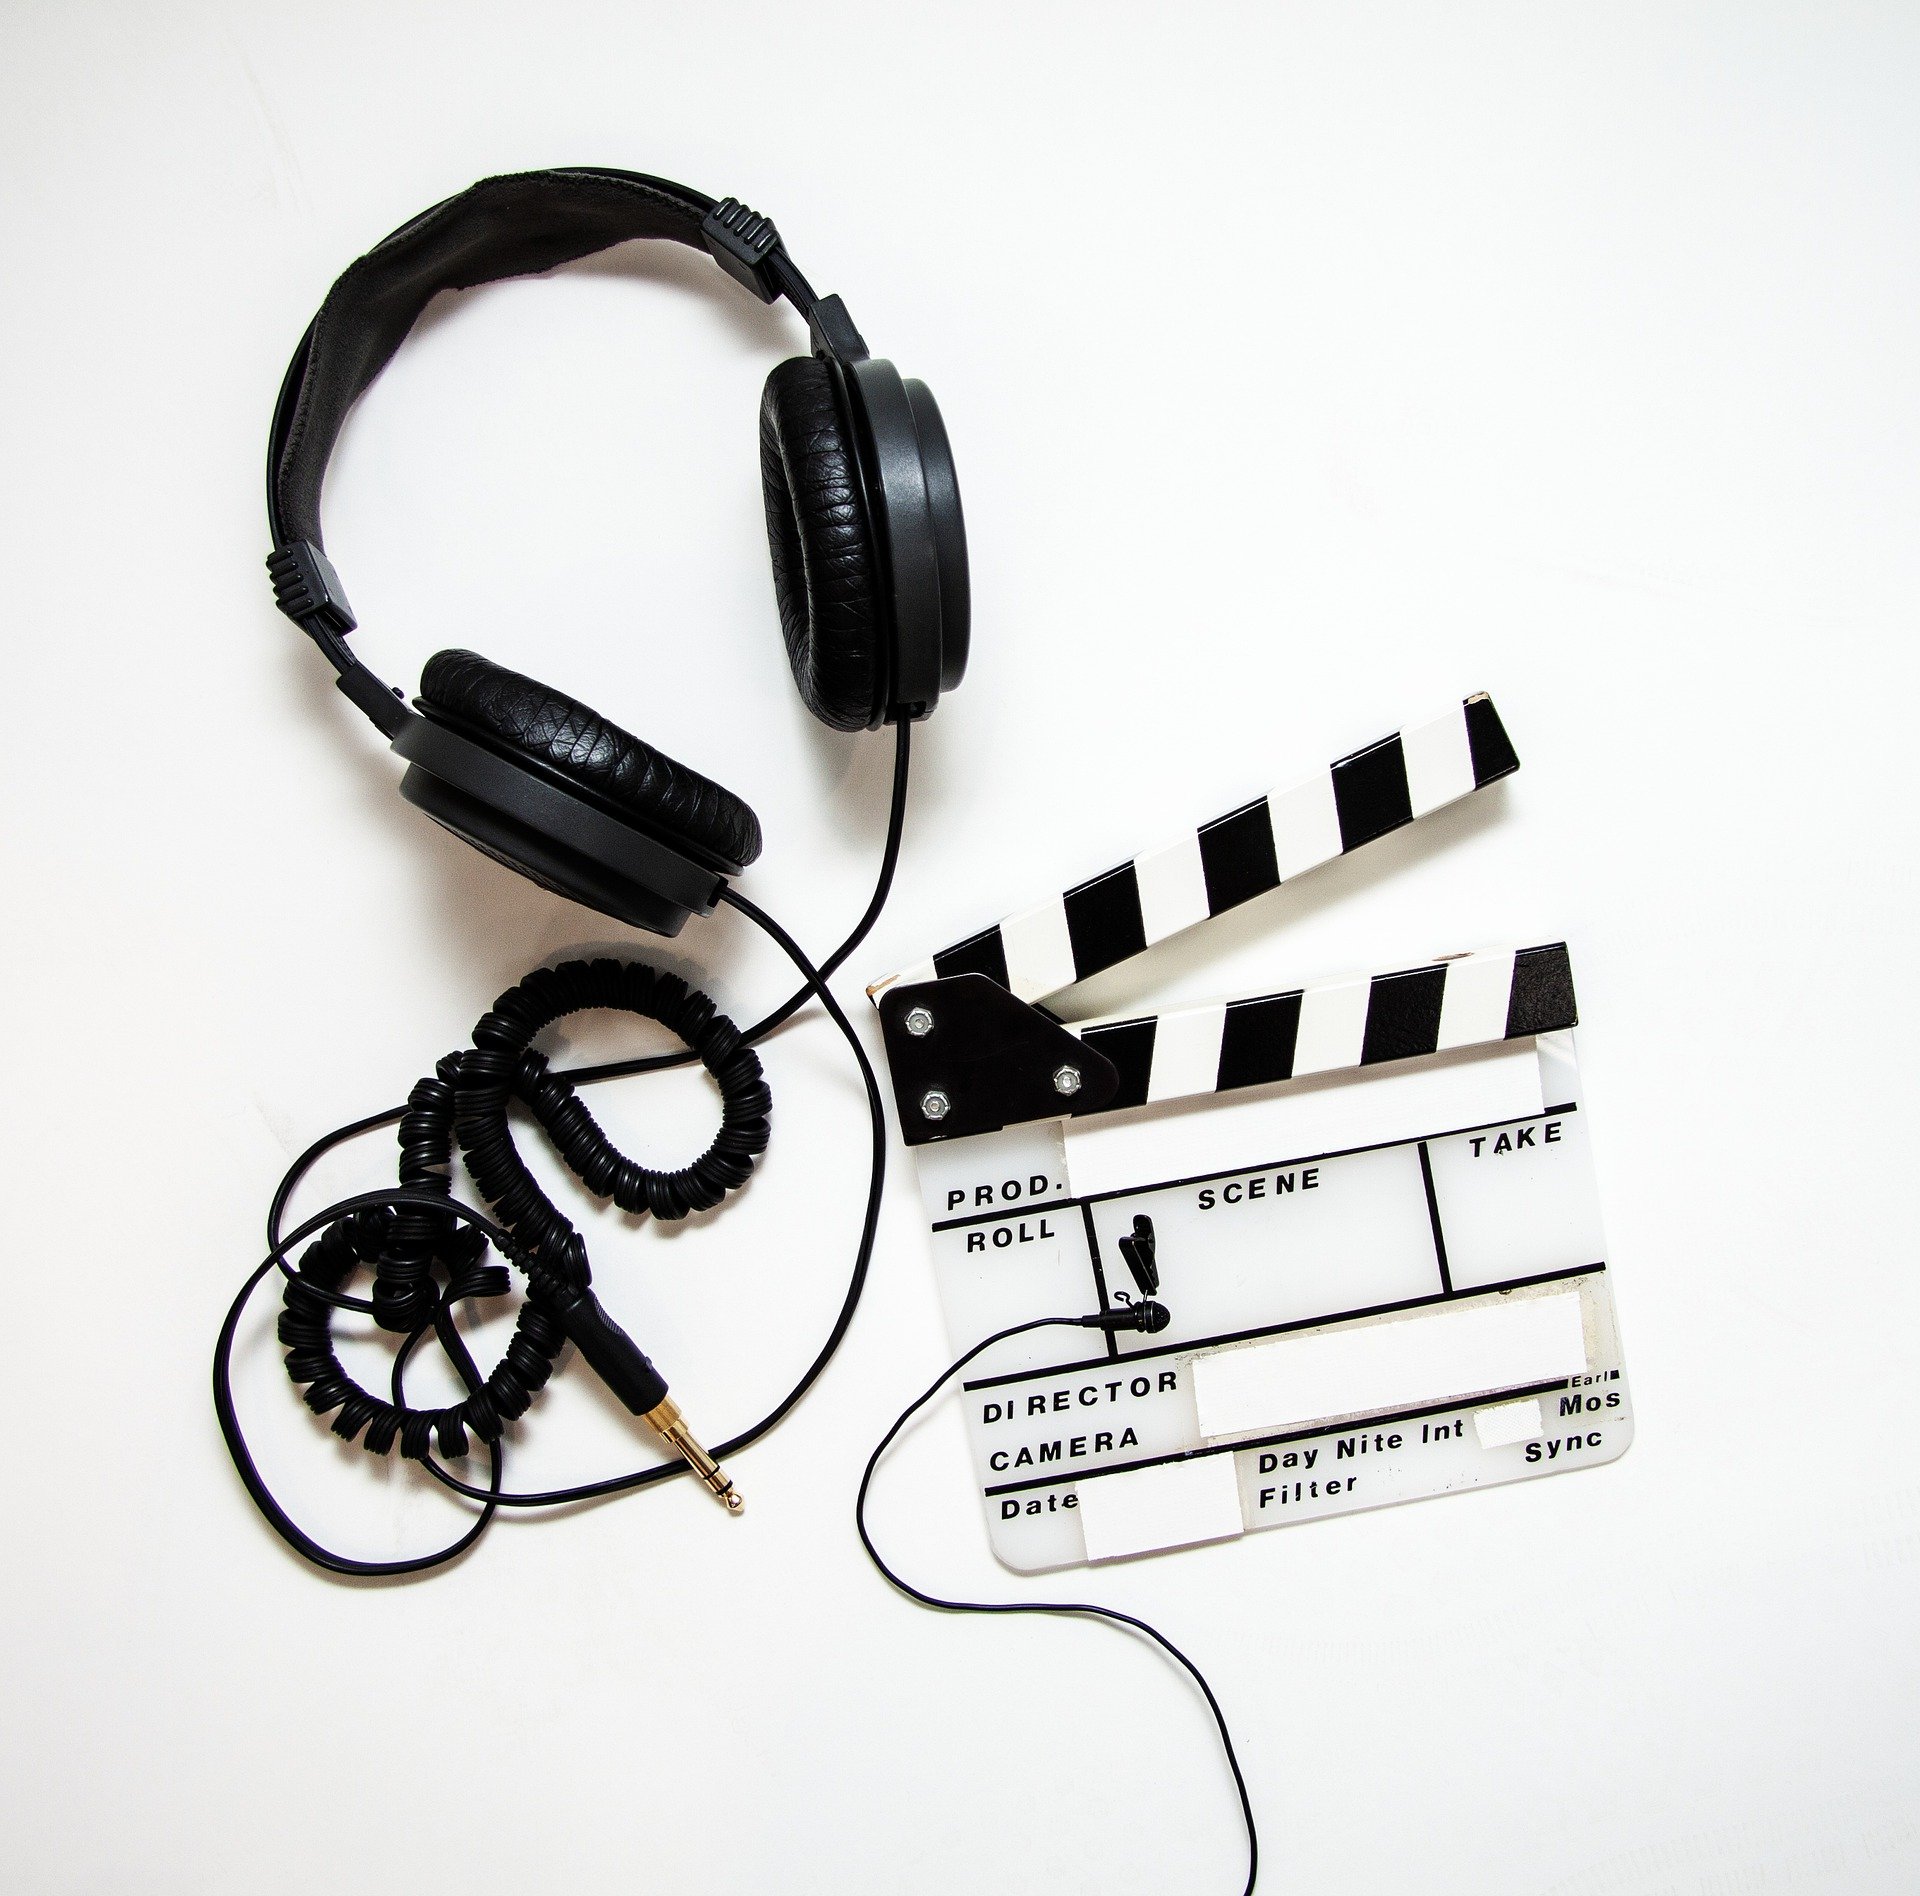 Kopfhörer mit Kabel und Filmklappe